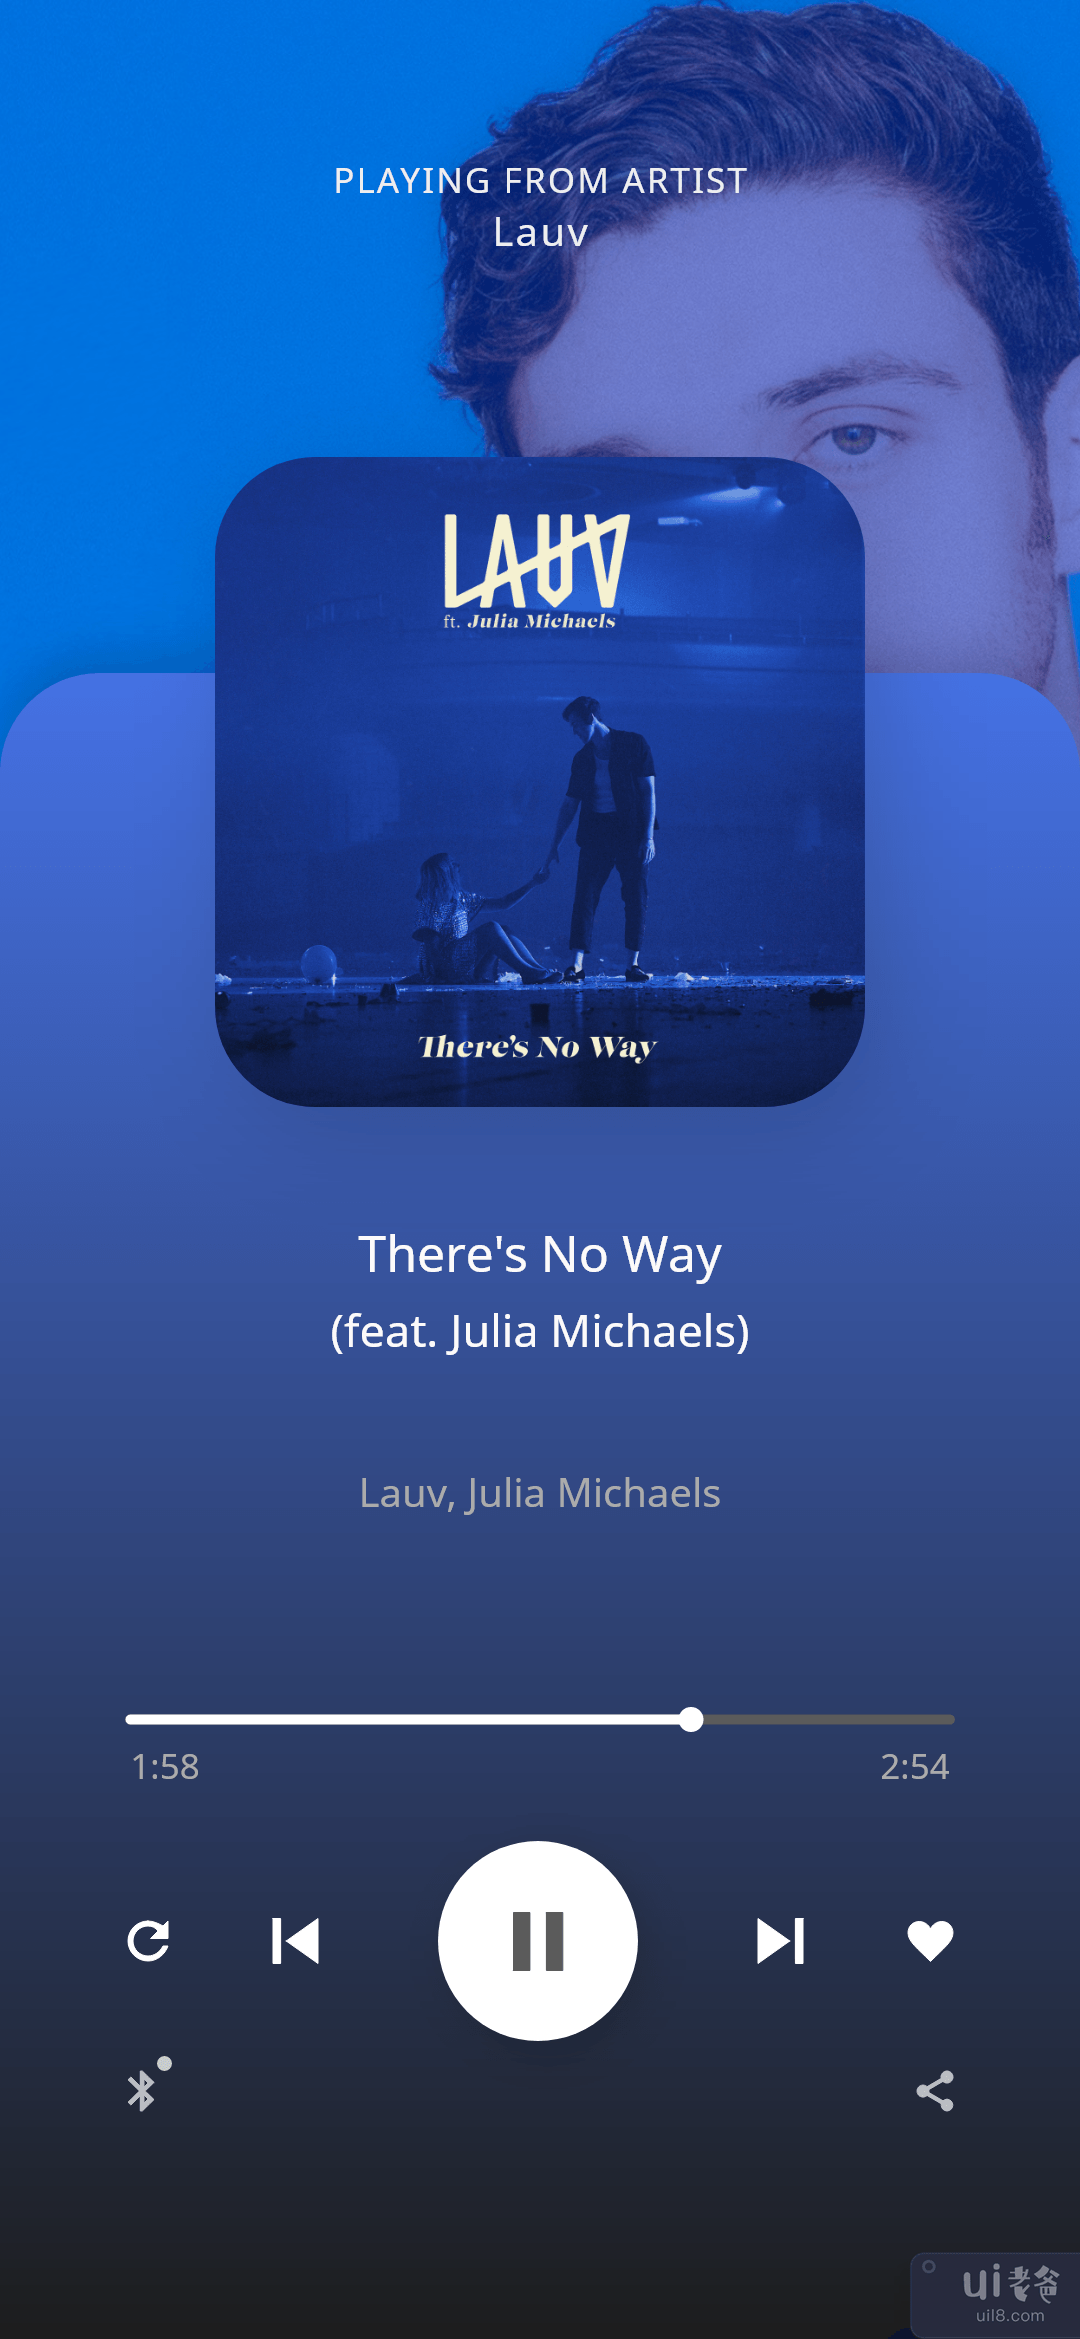 音乐应用 UI - 音乐播放器页面(Music App UI - Music Player Page)插图